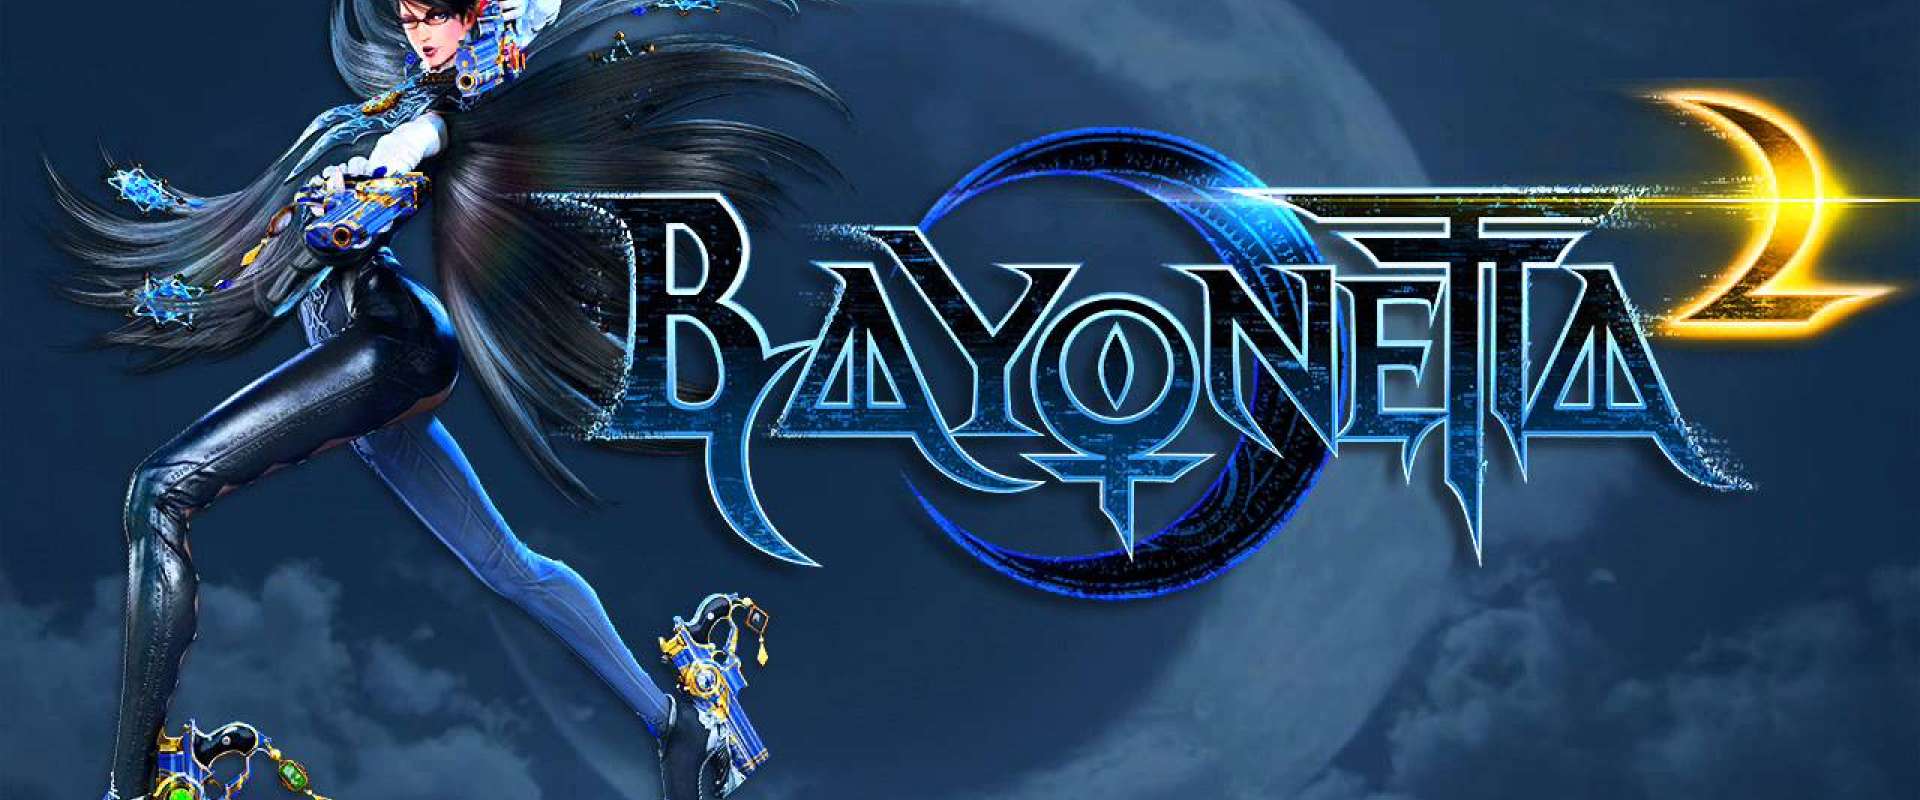 PC] Bayonetta v1.02 (Tribo Gamer) - João13